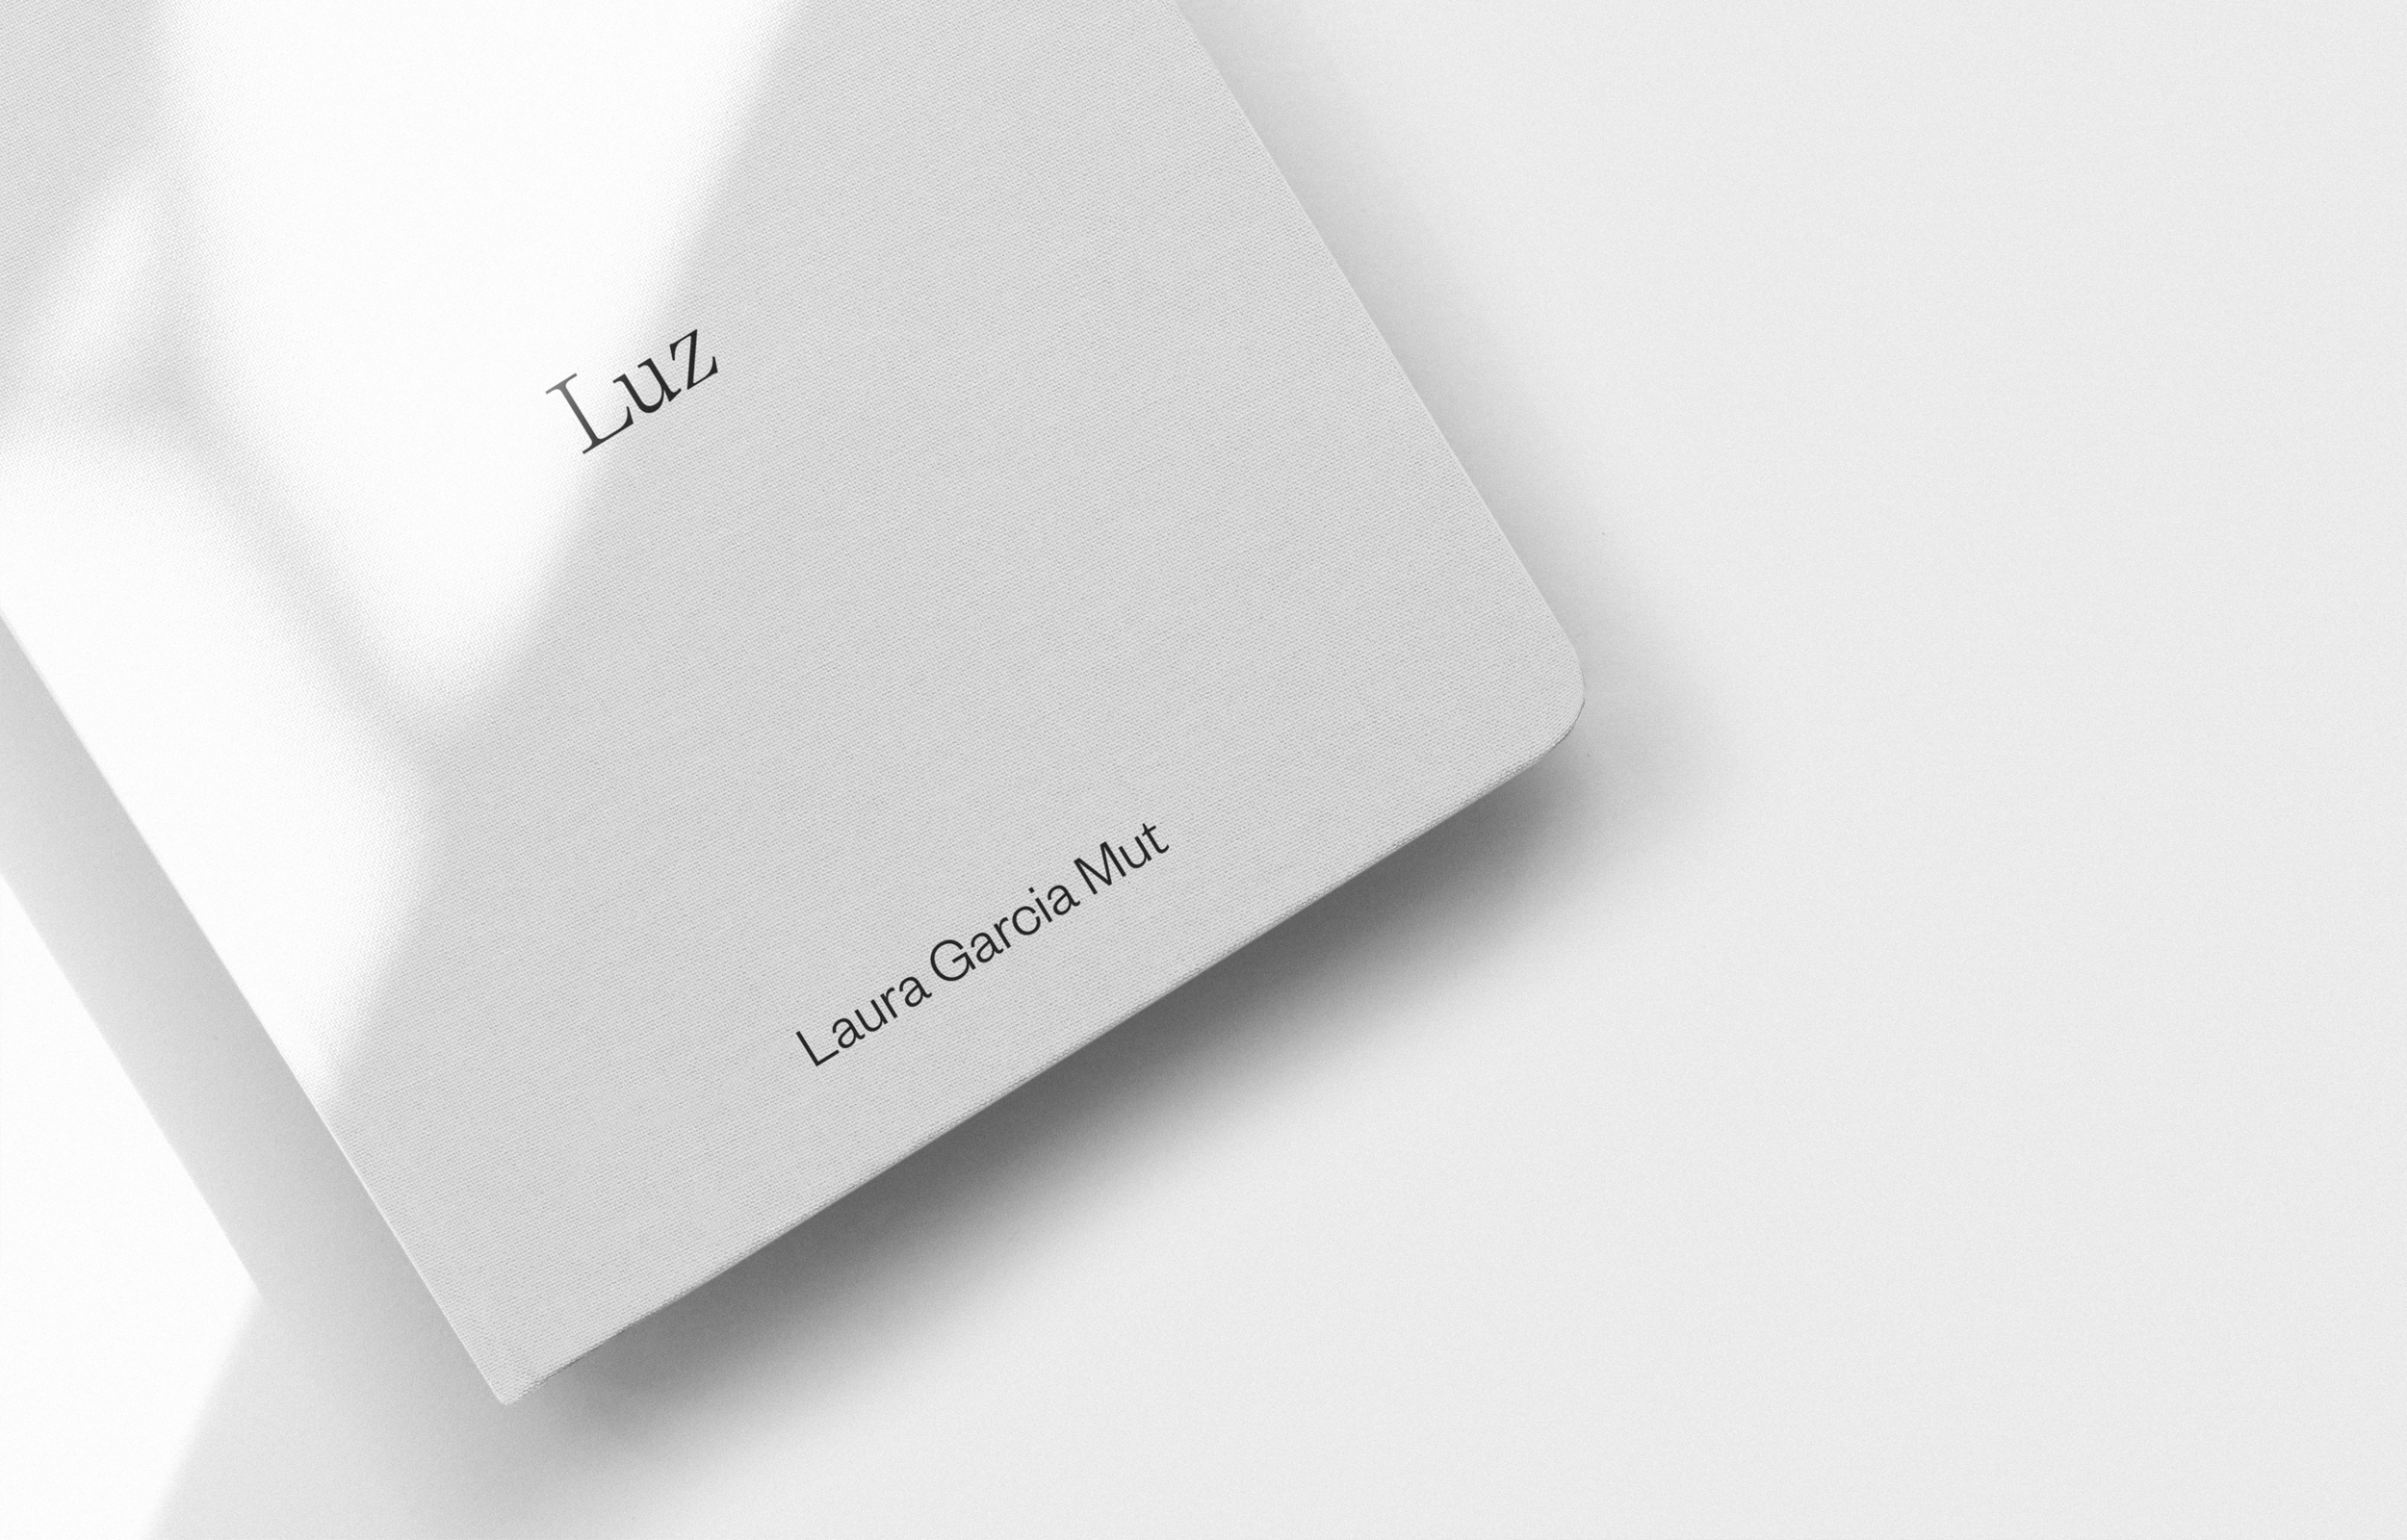 Luz by Laura Garcia Mut - Creative Work